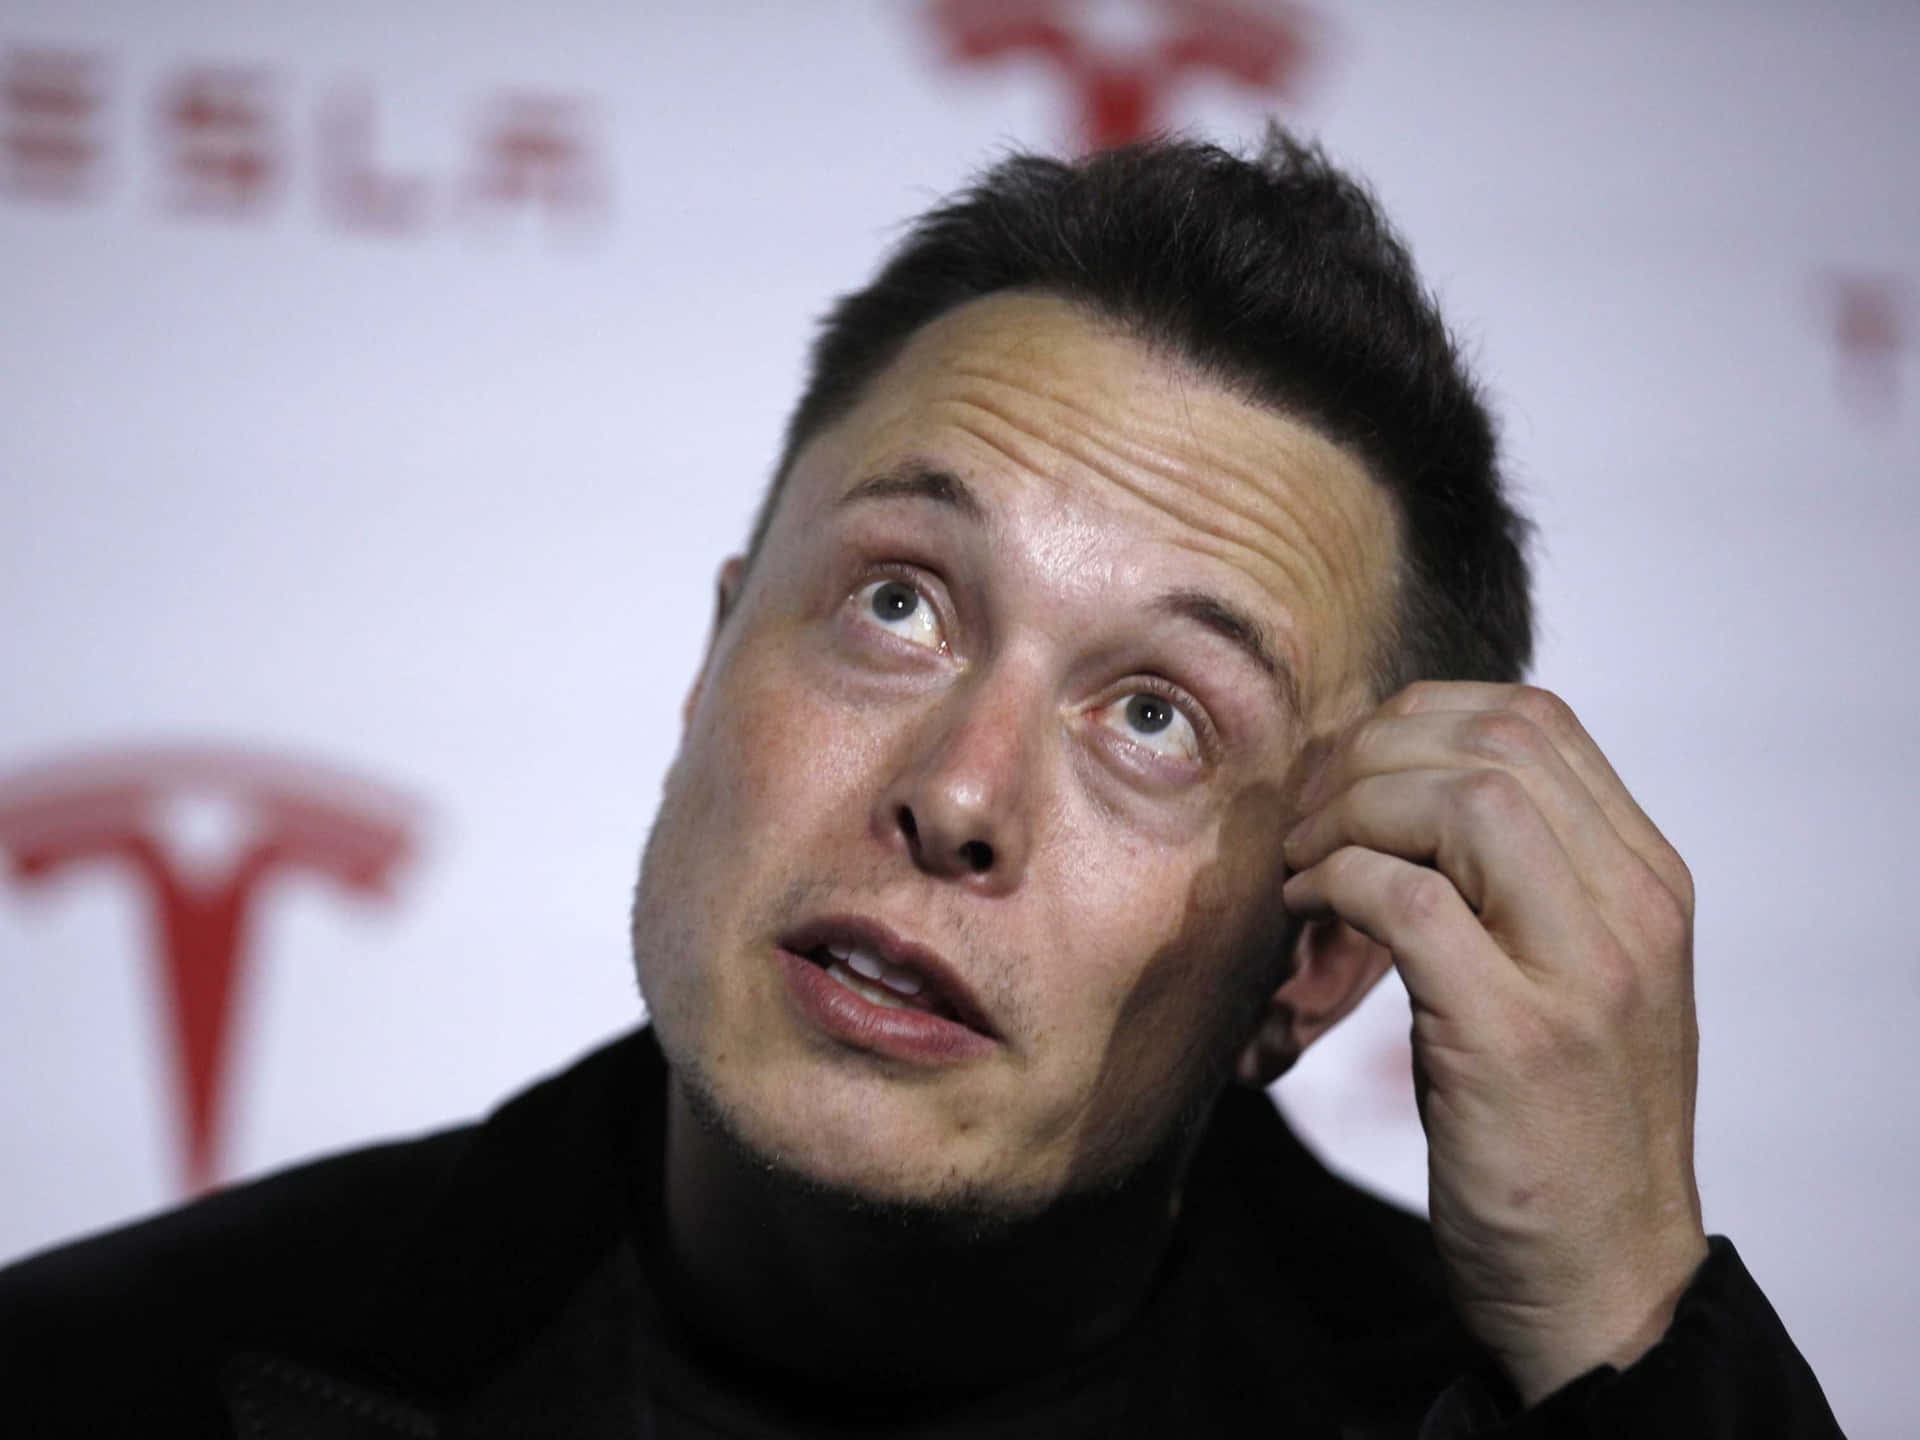 "Elon Musk, the Innovator and Entrepreneur"